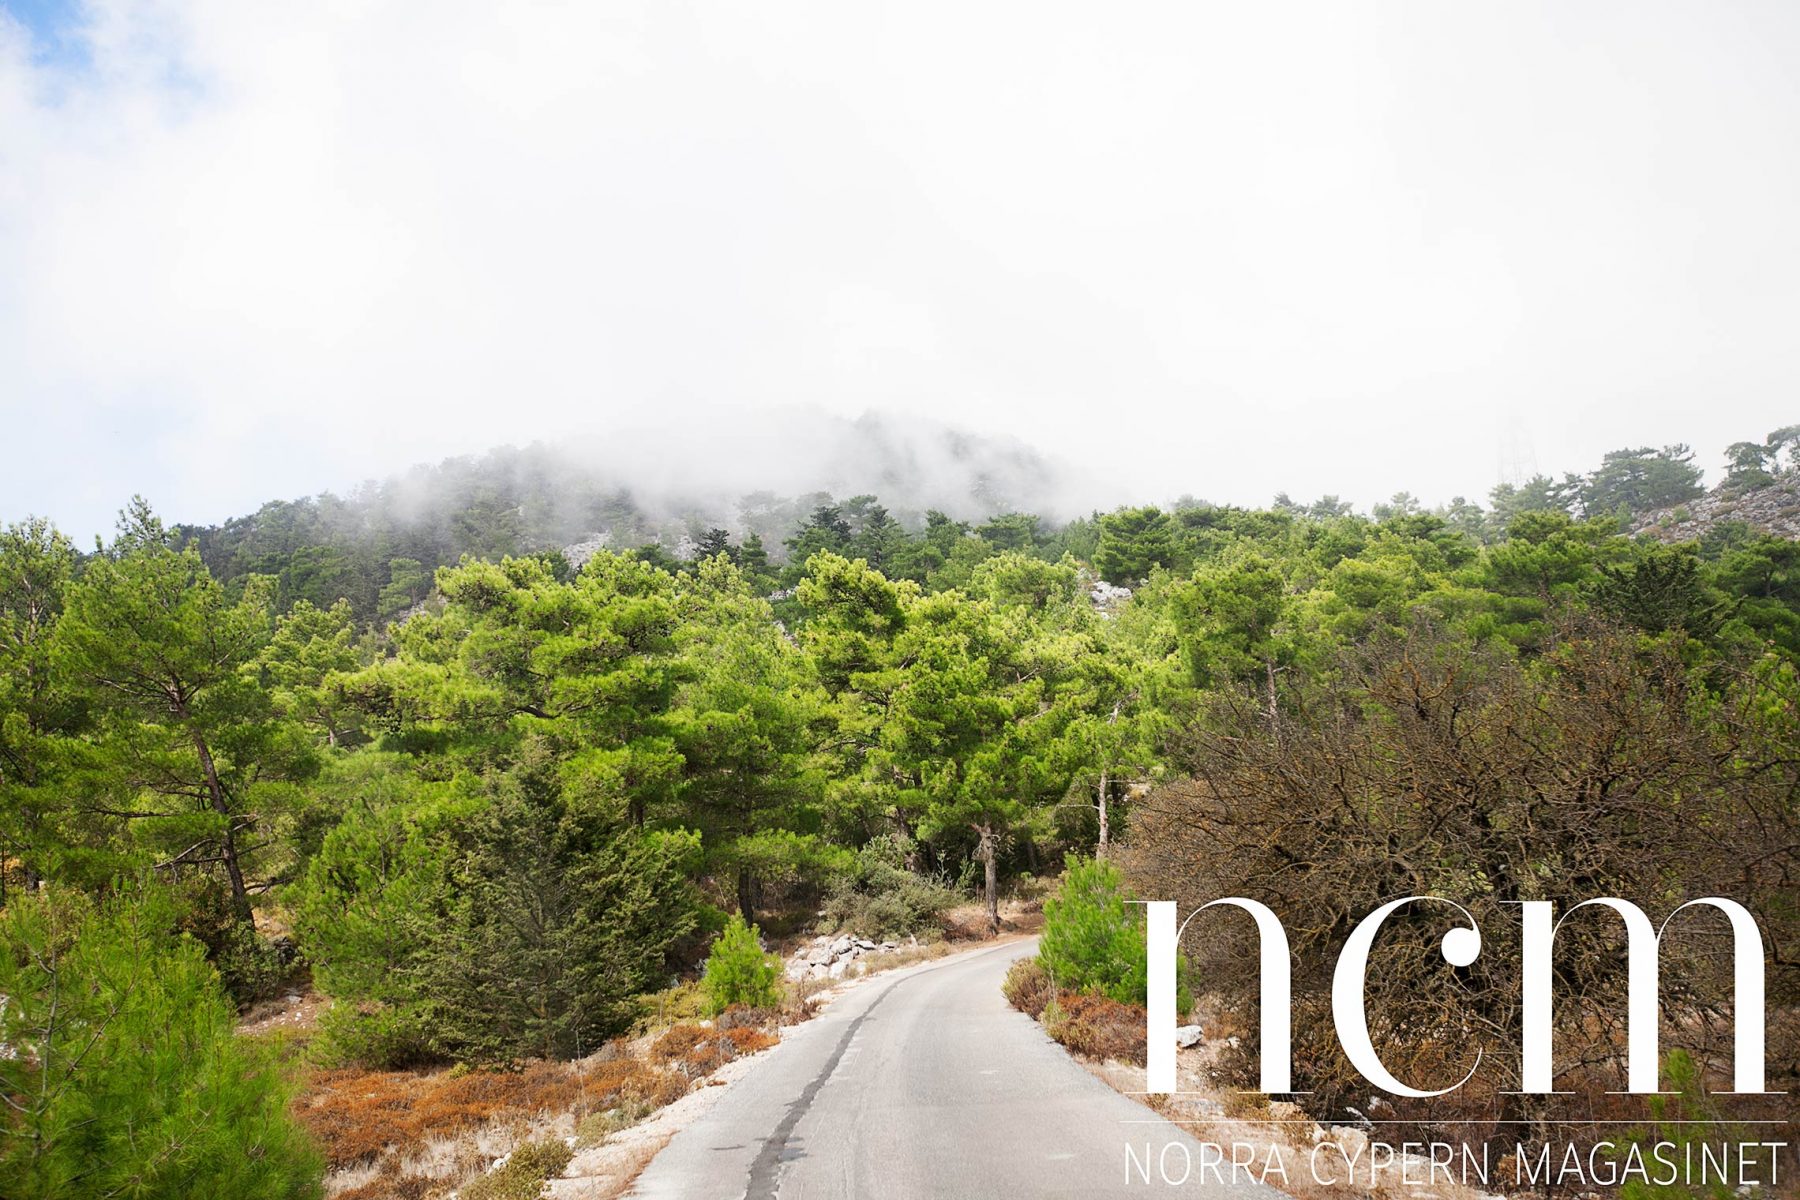 väg uppe i bergen på jeep safari på norra cypern